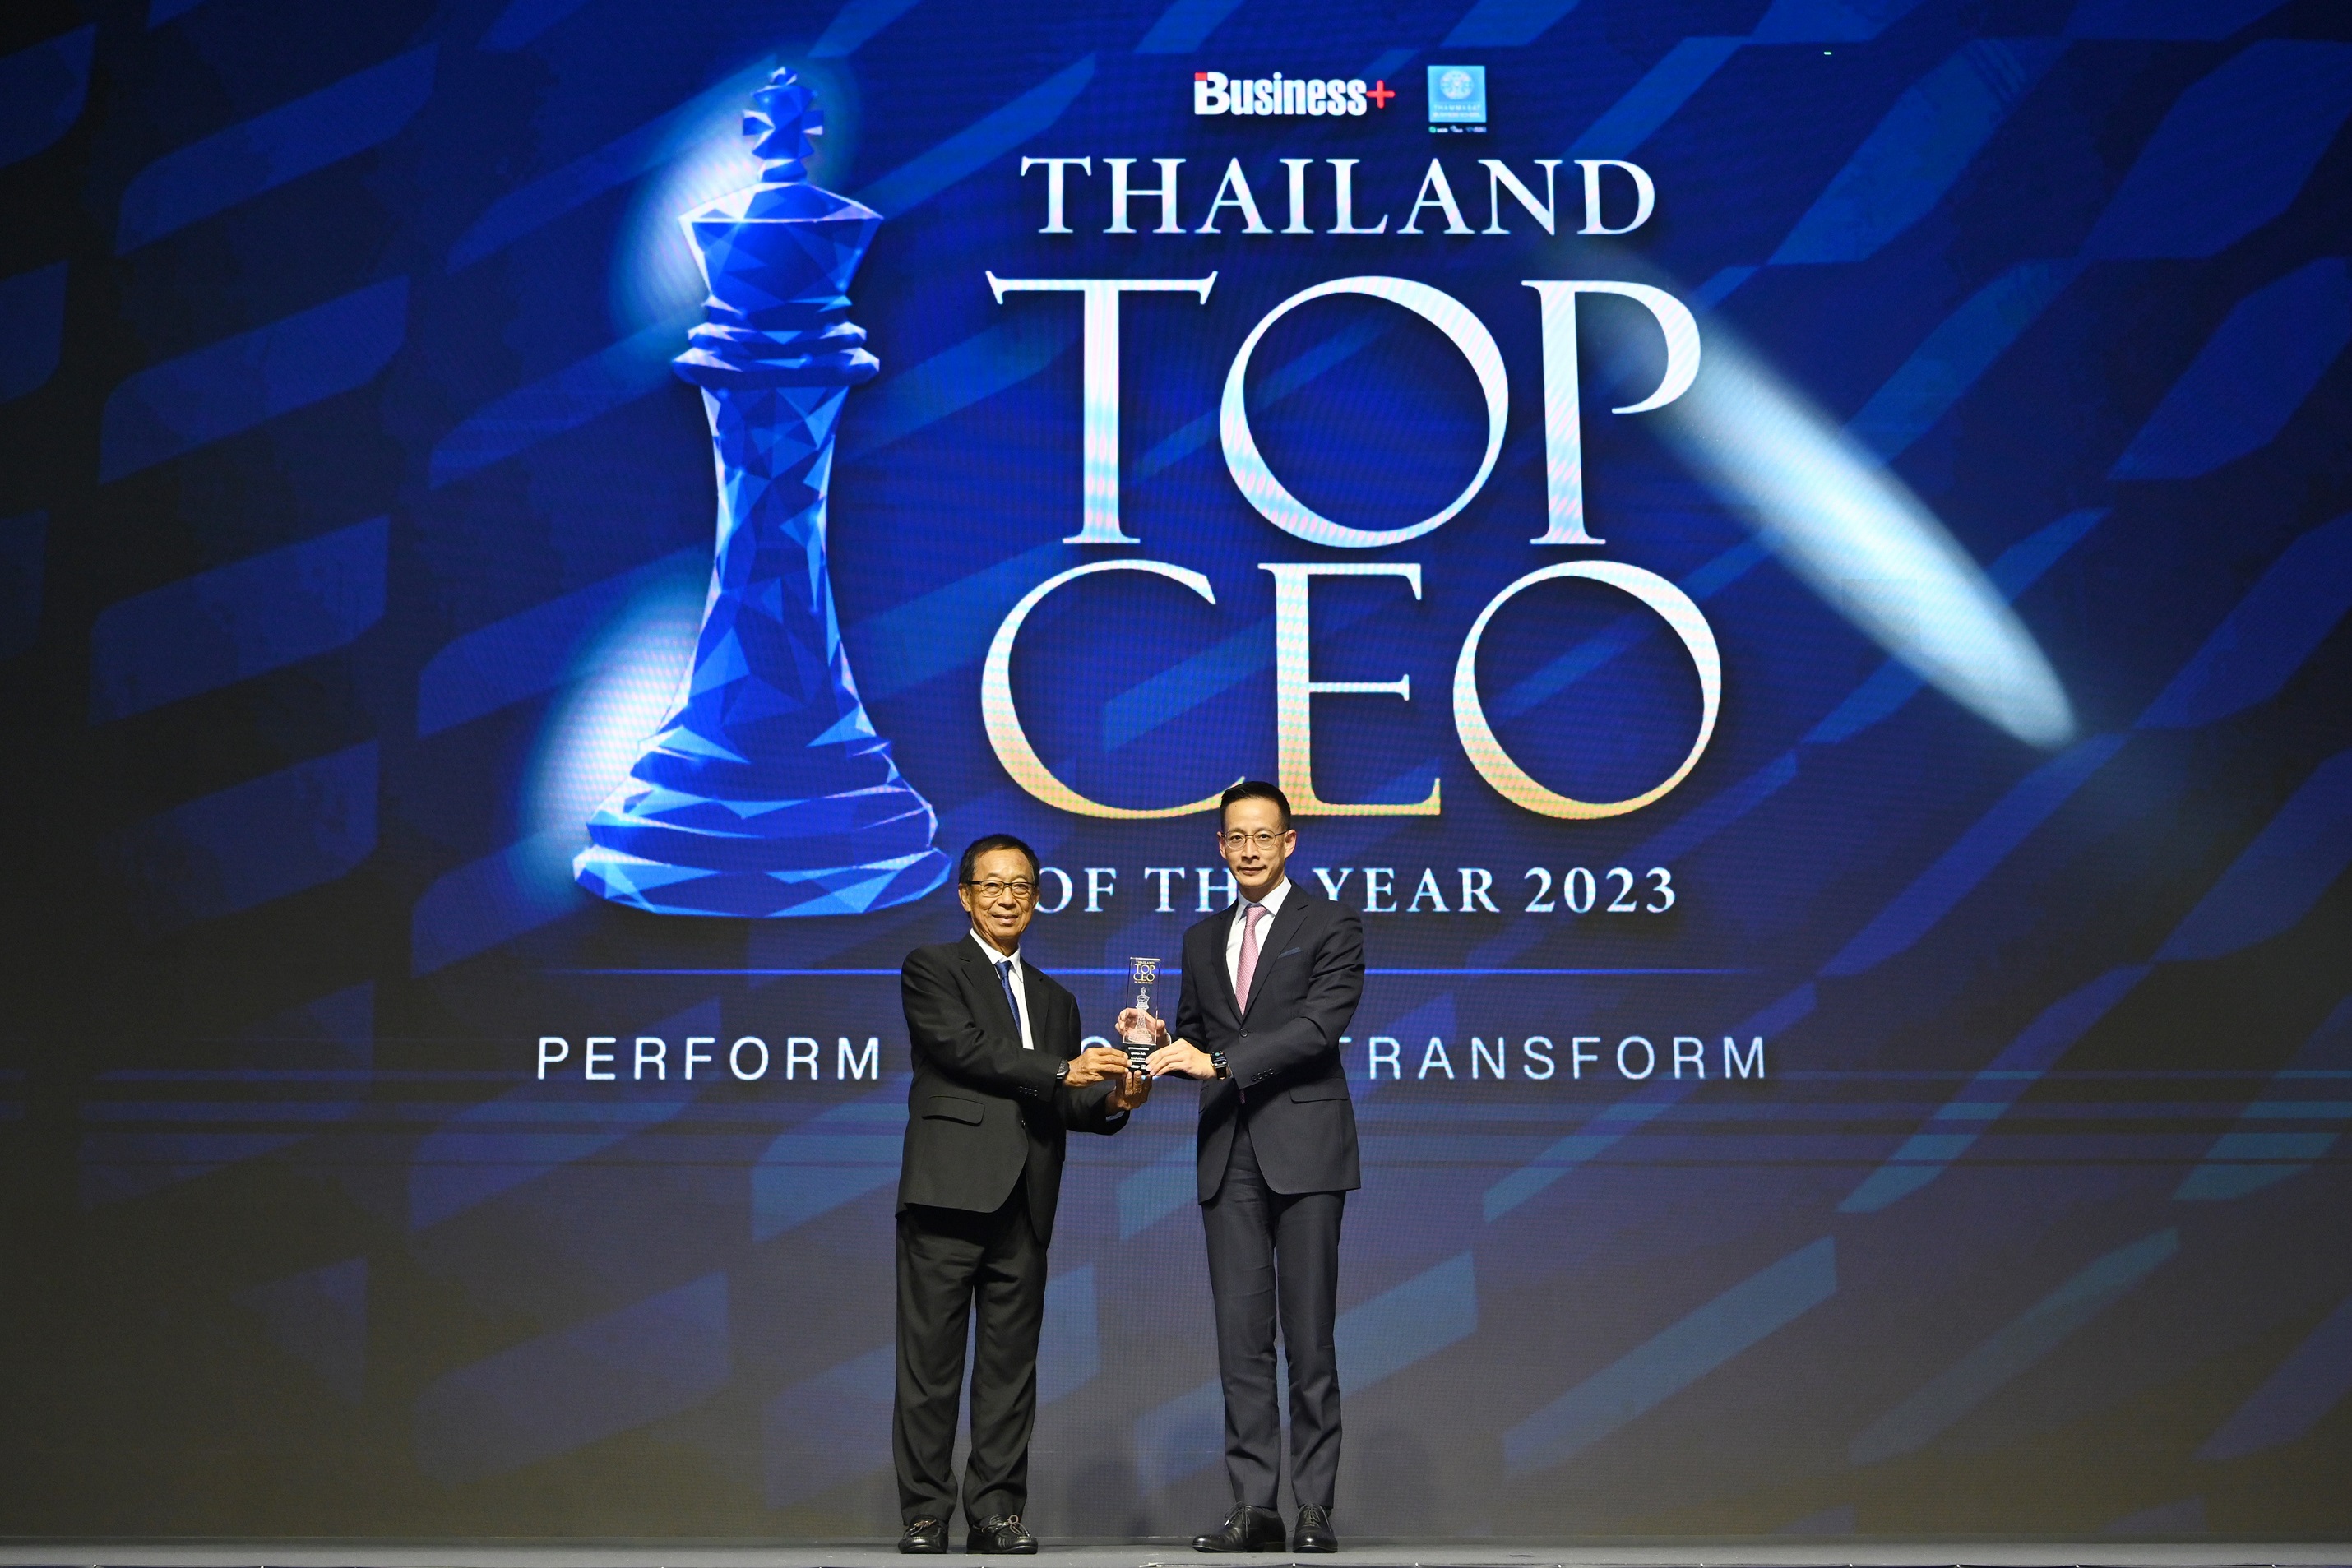 “สาระ ล่ำซำ” รับรางวัลสุดยอดผู้นำองค์กรแห่งปี “THAILAND TOP CEO OF THE YEAR 2023” ประเภท “อุตสาหกรรมประกันชีวิต” ต่อเนื่องเป็นปีที่ 2